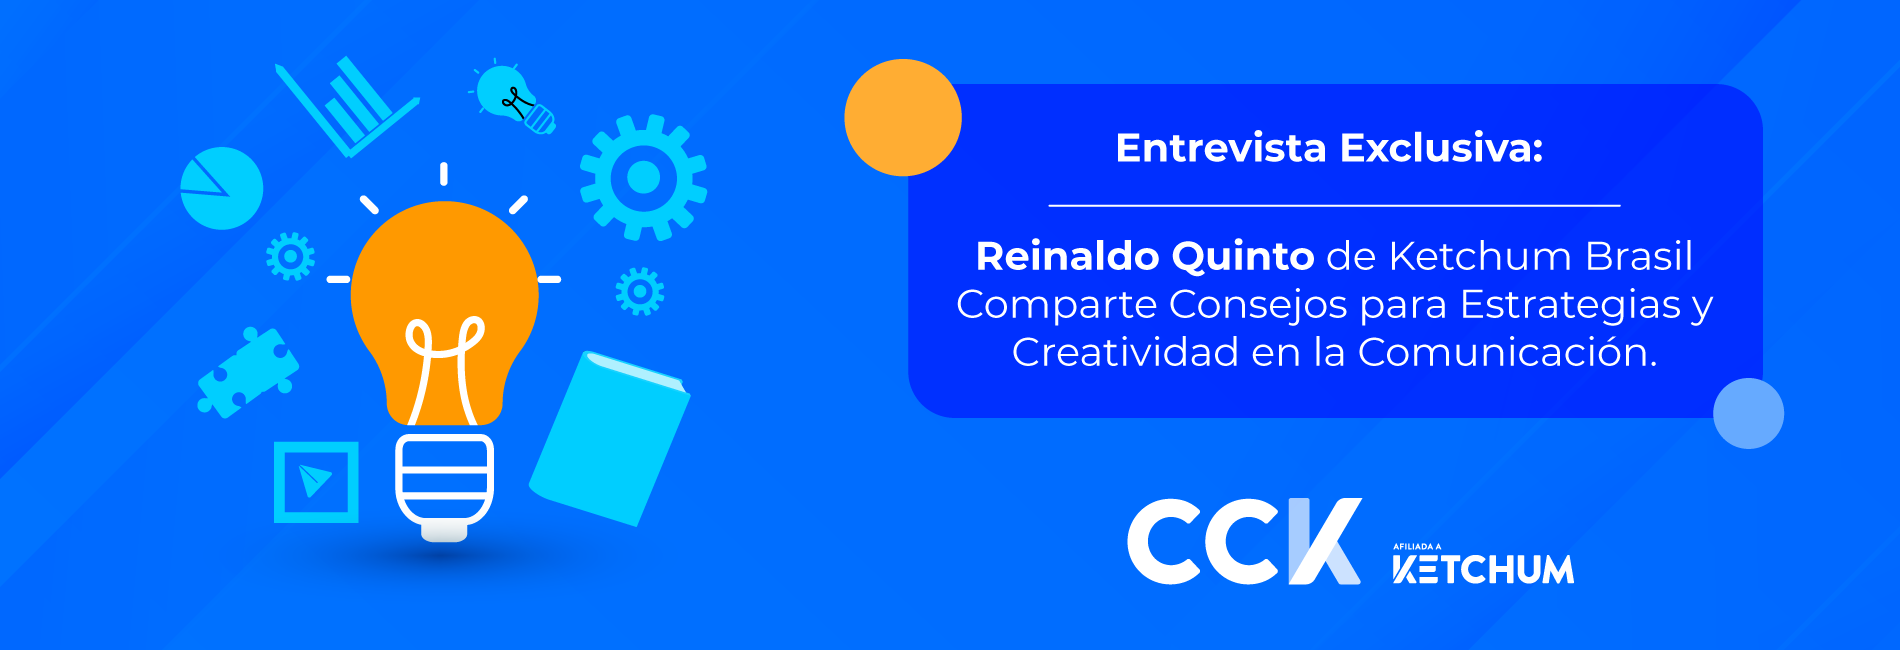 Entrevista Exclusiva: Reinaldo Quinto de Ketchum Brasil Comparte Consejos para Estrategias y Creatividad en la Comunicación